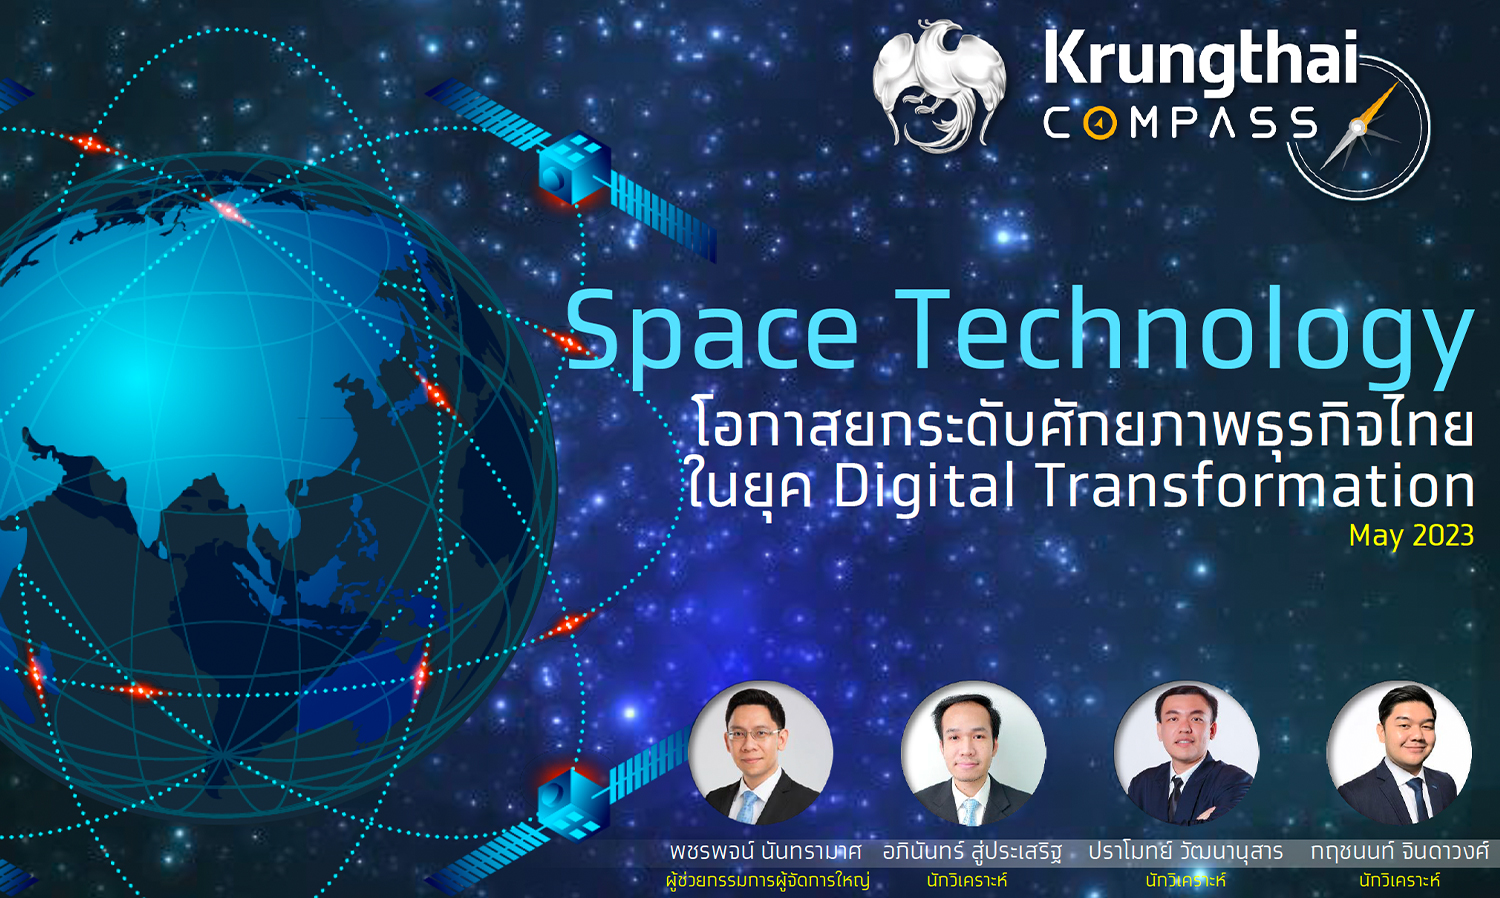 ศูนย์วิจัยกรุงไทย ชี้ Space Technology ช่วยยกระดับศักยภาพธุรกิจไทย 